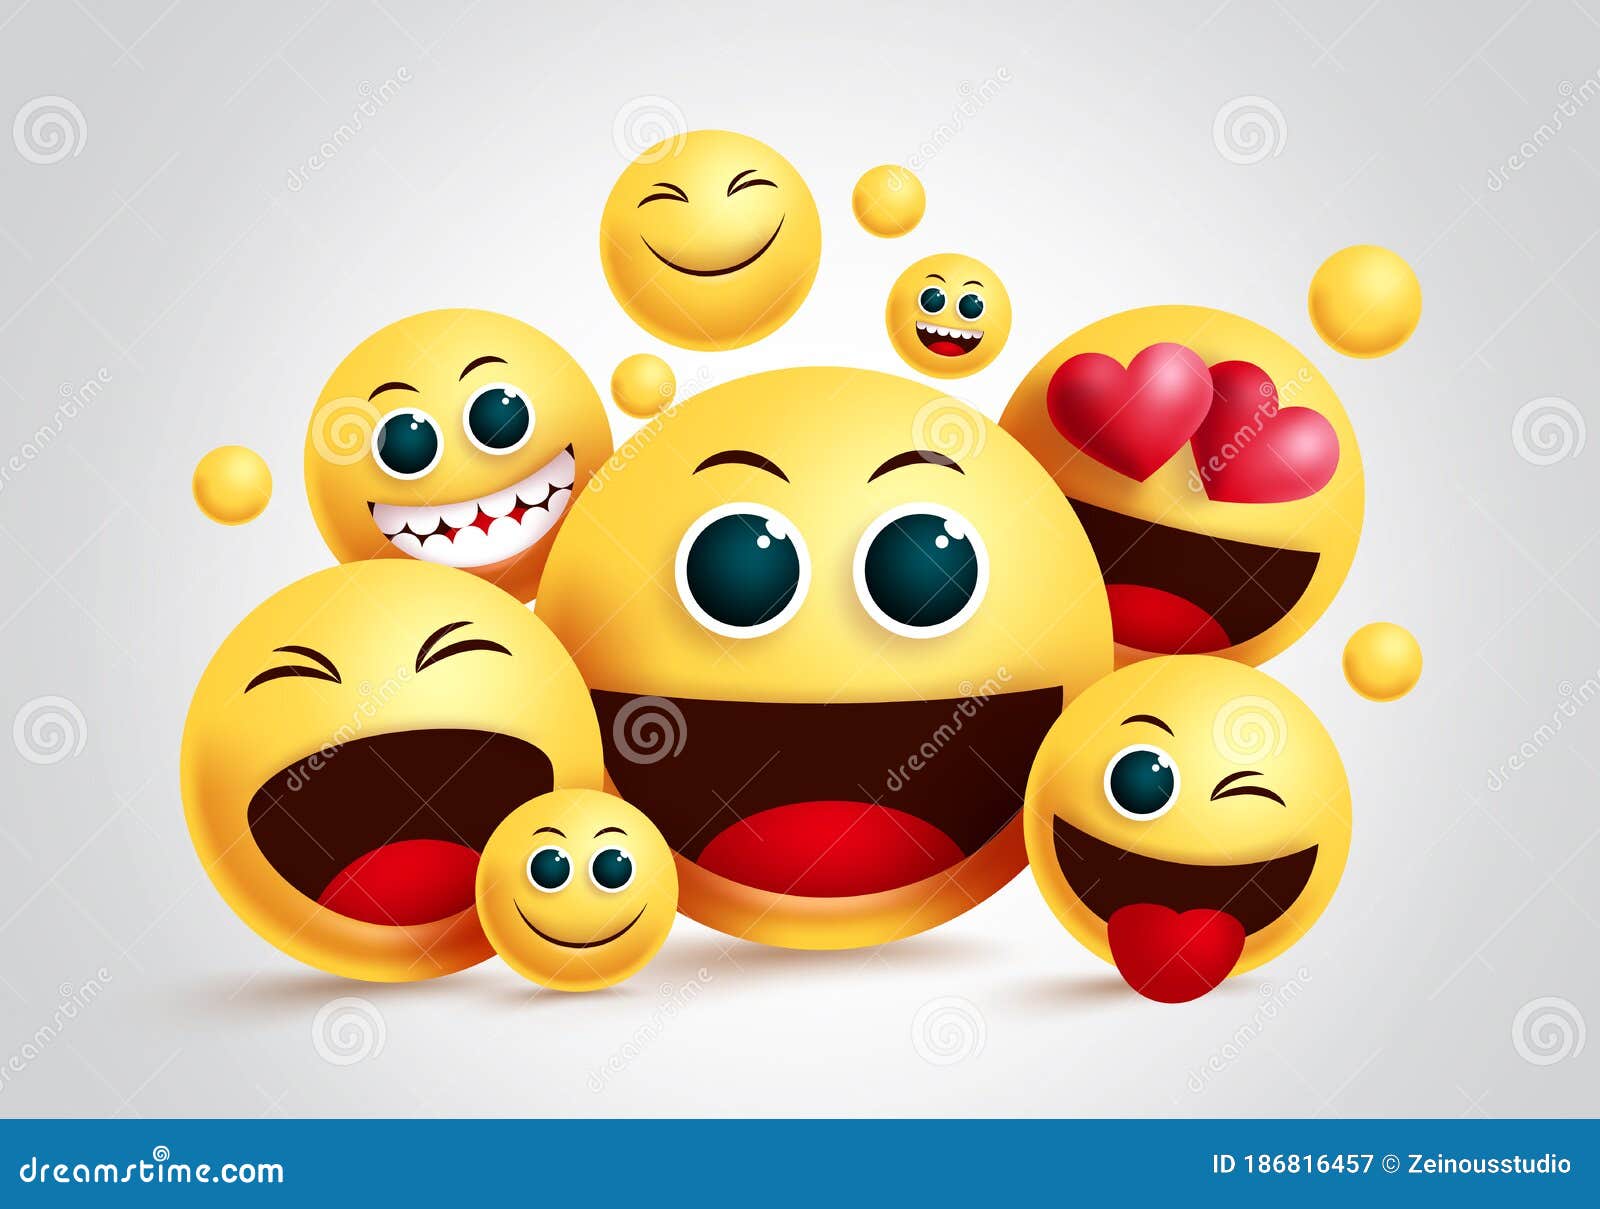 happy emoticon png